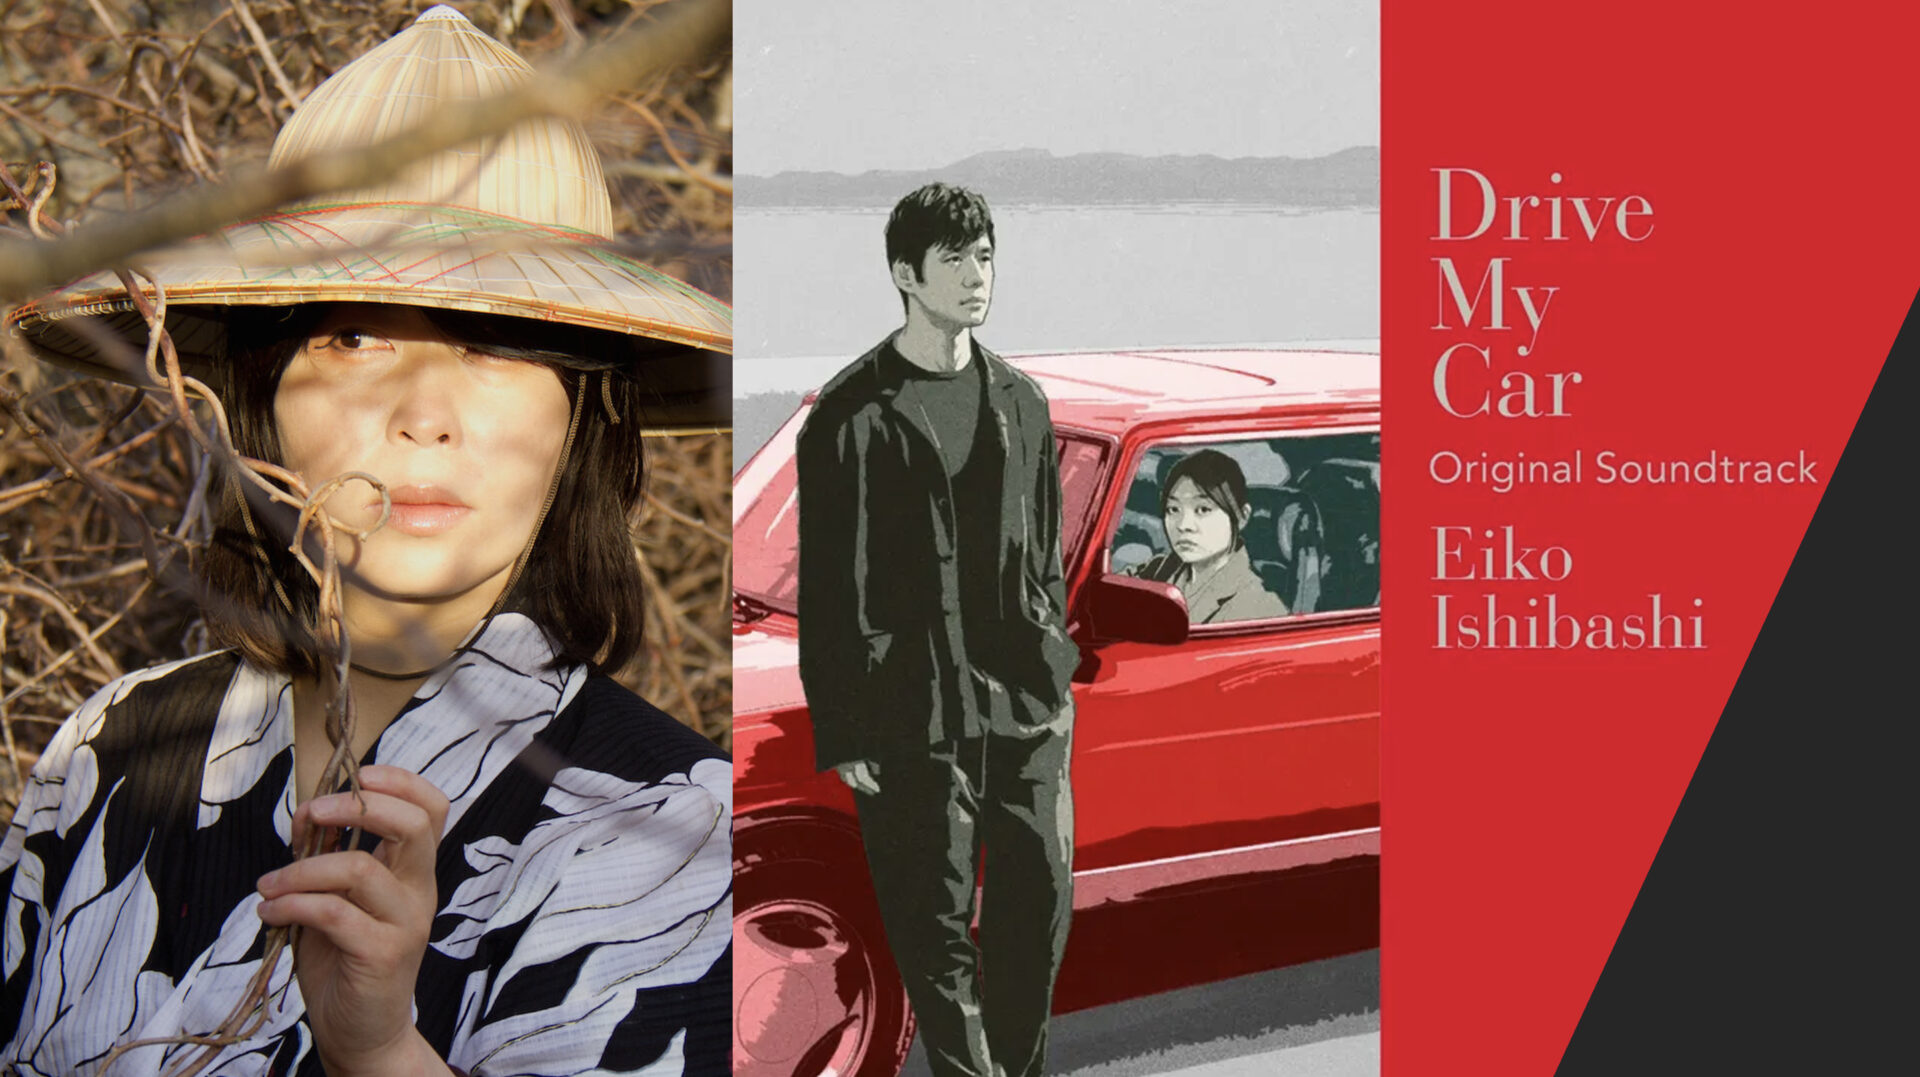 ‘Eiko Ishibashi’ ผู้ถ่ายทอดเสียงของรอยร้าวและปริศนาในหัวใจจากภาพยนตร์เรื่อง ‘Drive My Car’